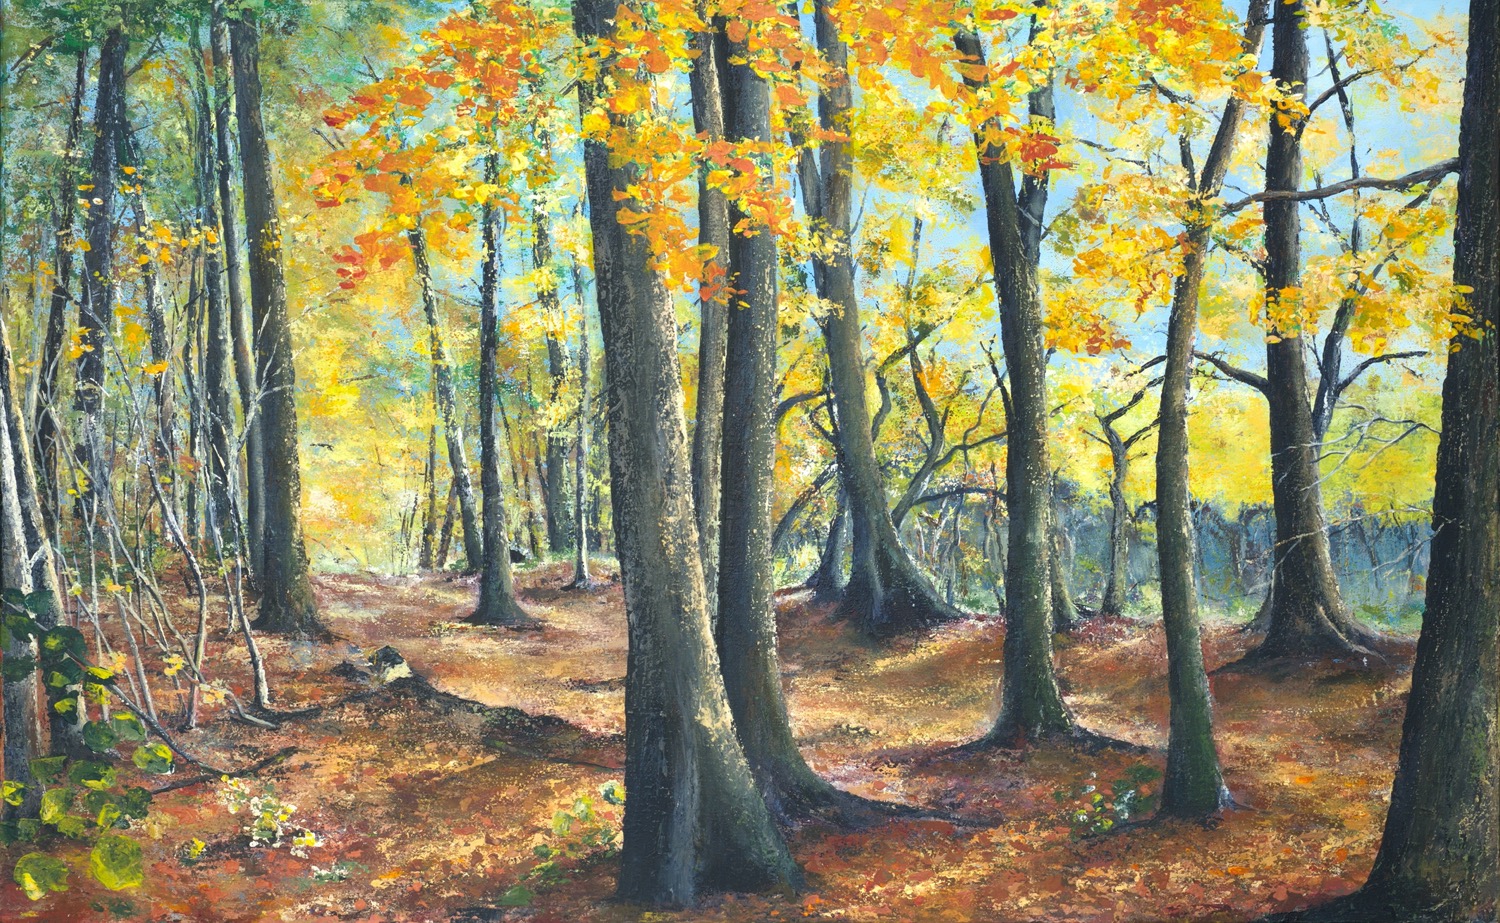 Zauber des Herbstwaldes - Acryl auf Leinwand - 80 x 130 cm © Katharina Hansen-Gluschitz